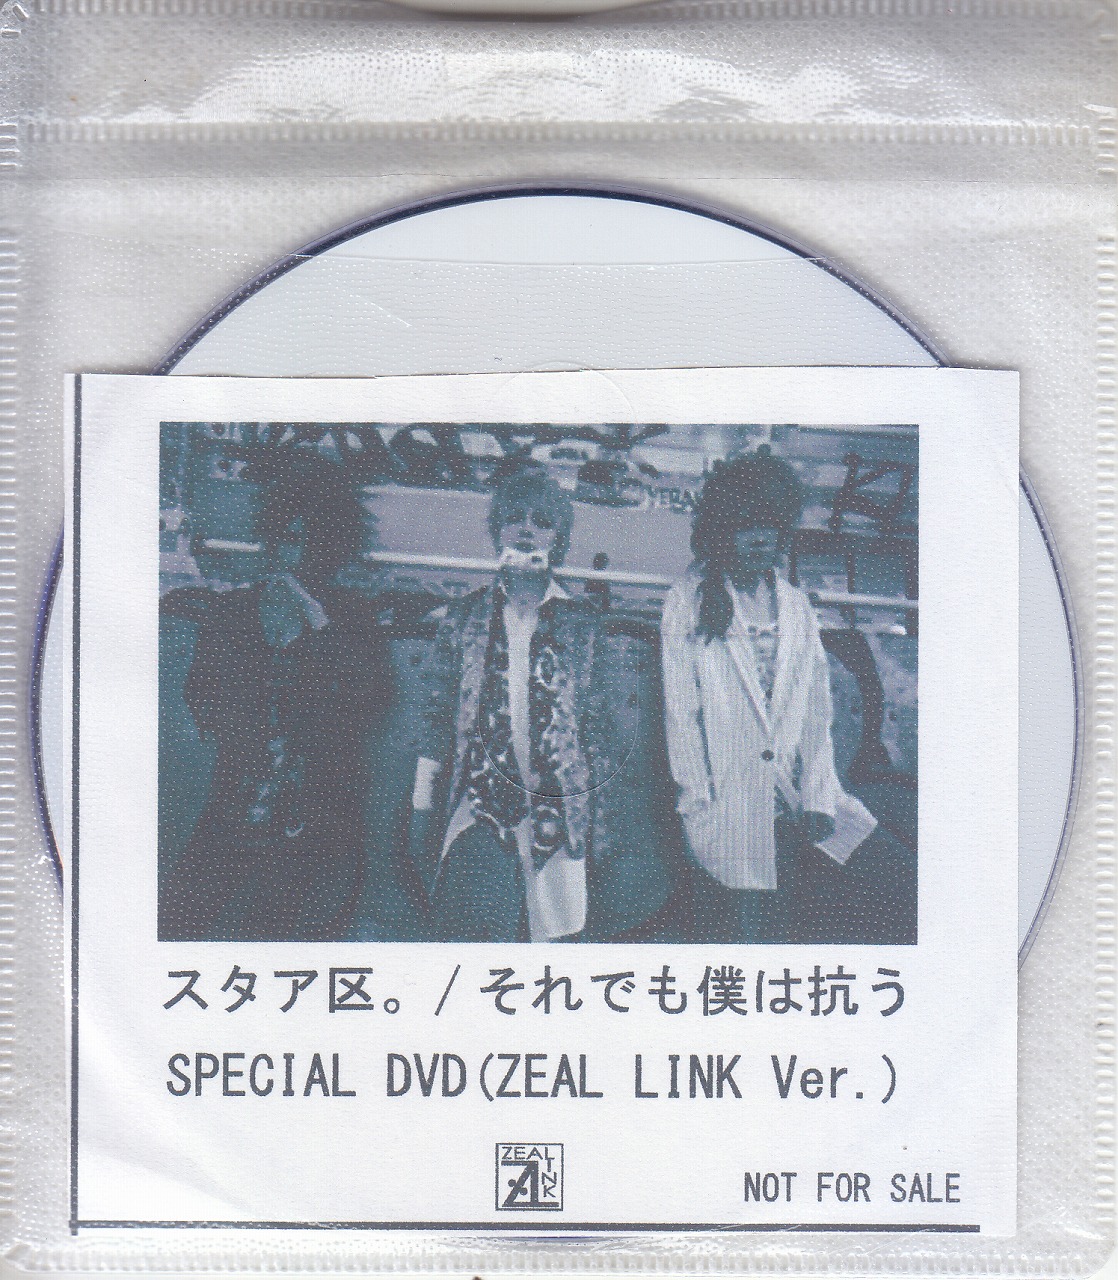 スタアク の DVD 【ZEAL LINK】それでも僕は抗う SPECIAL DVD(ZEAL LINK Ver.)